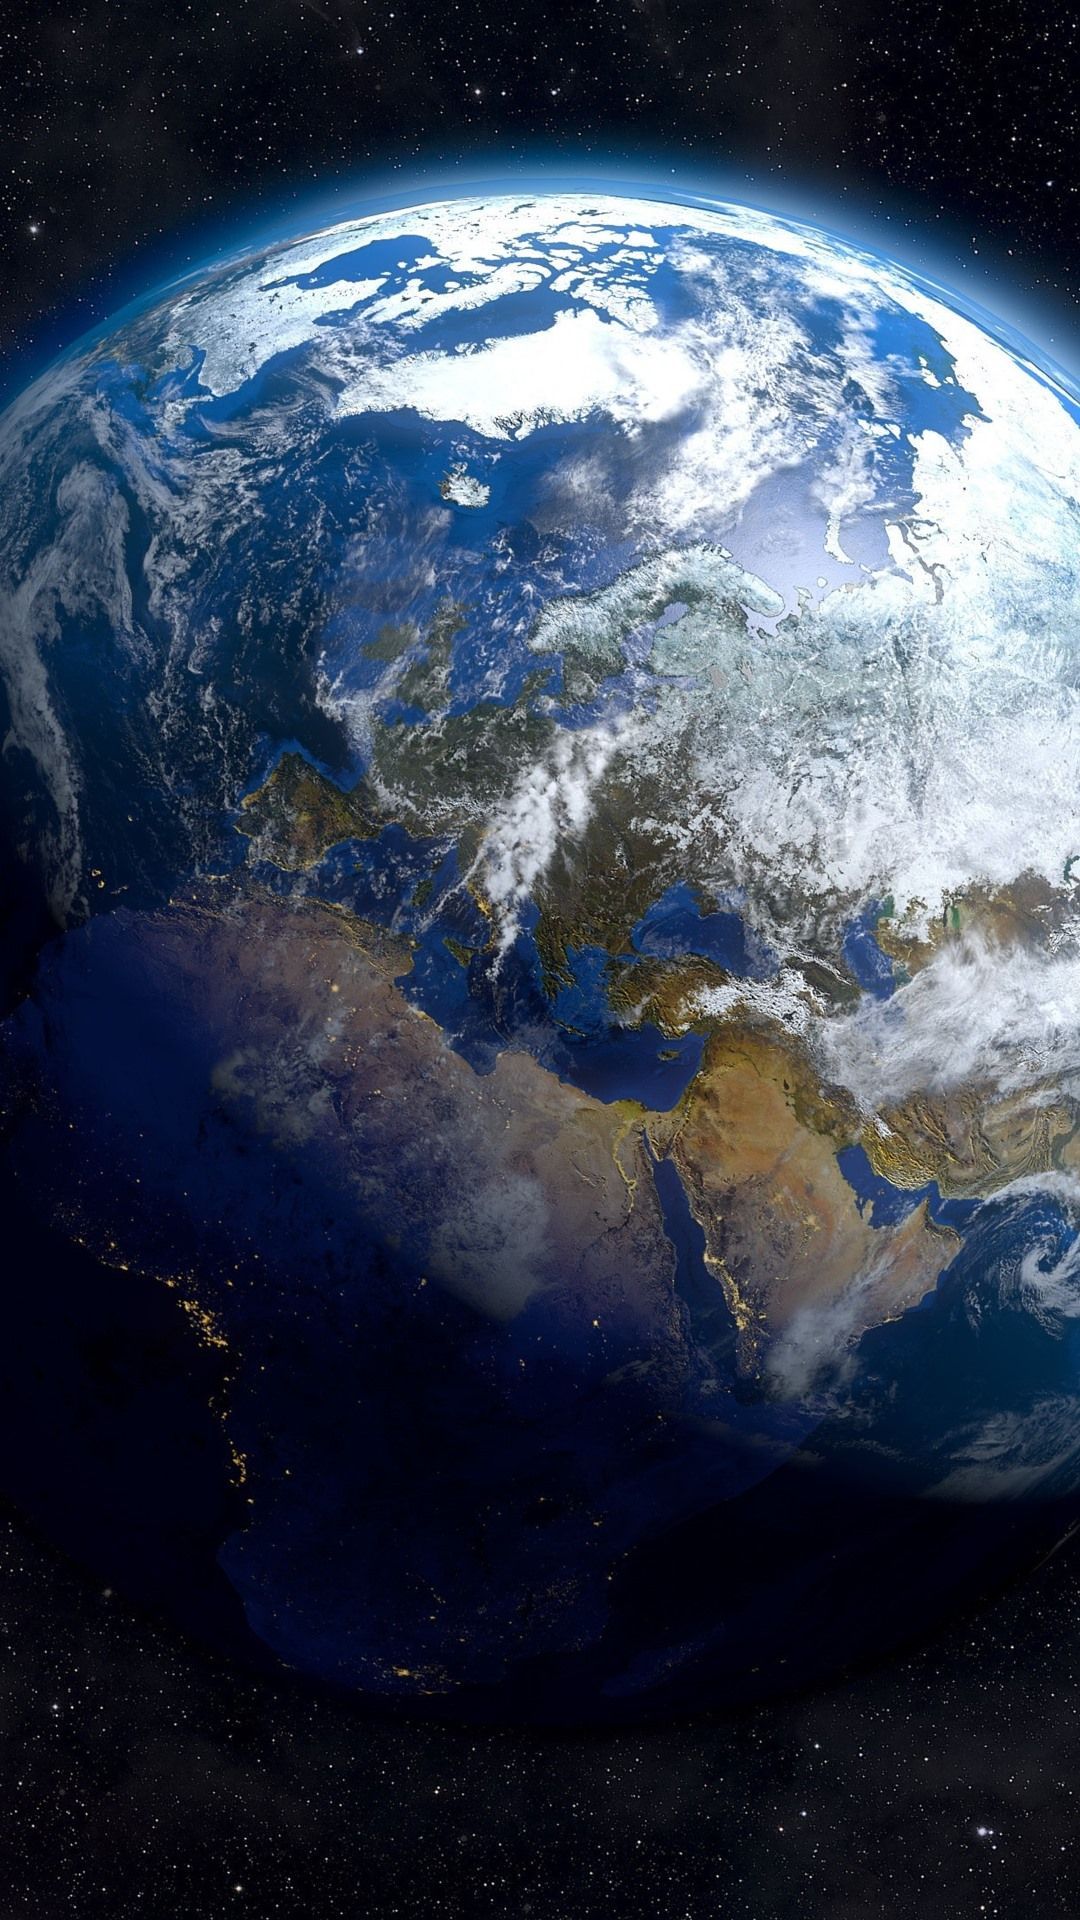  Das Beste Der Welt Hintergrundbild 1080x1920. Schöne Erde, Weltraum, Sterne 3840x2160 UHD 4K Hintergrundbilder, HD, Bild